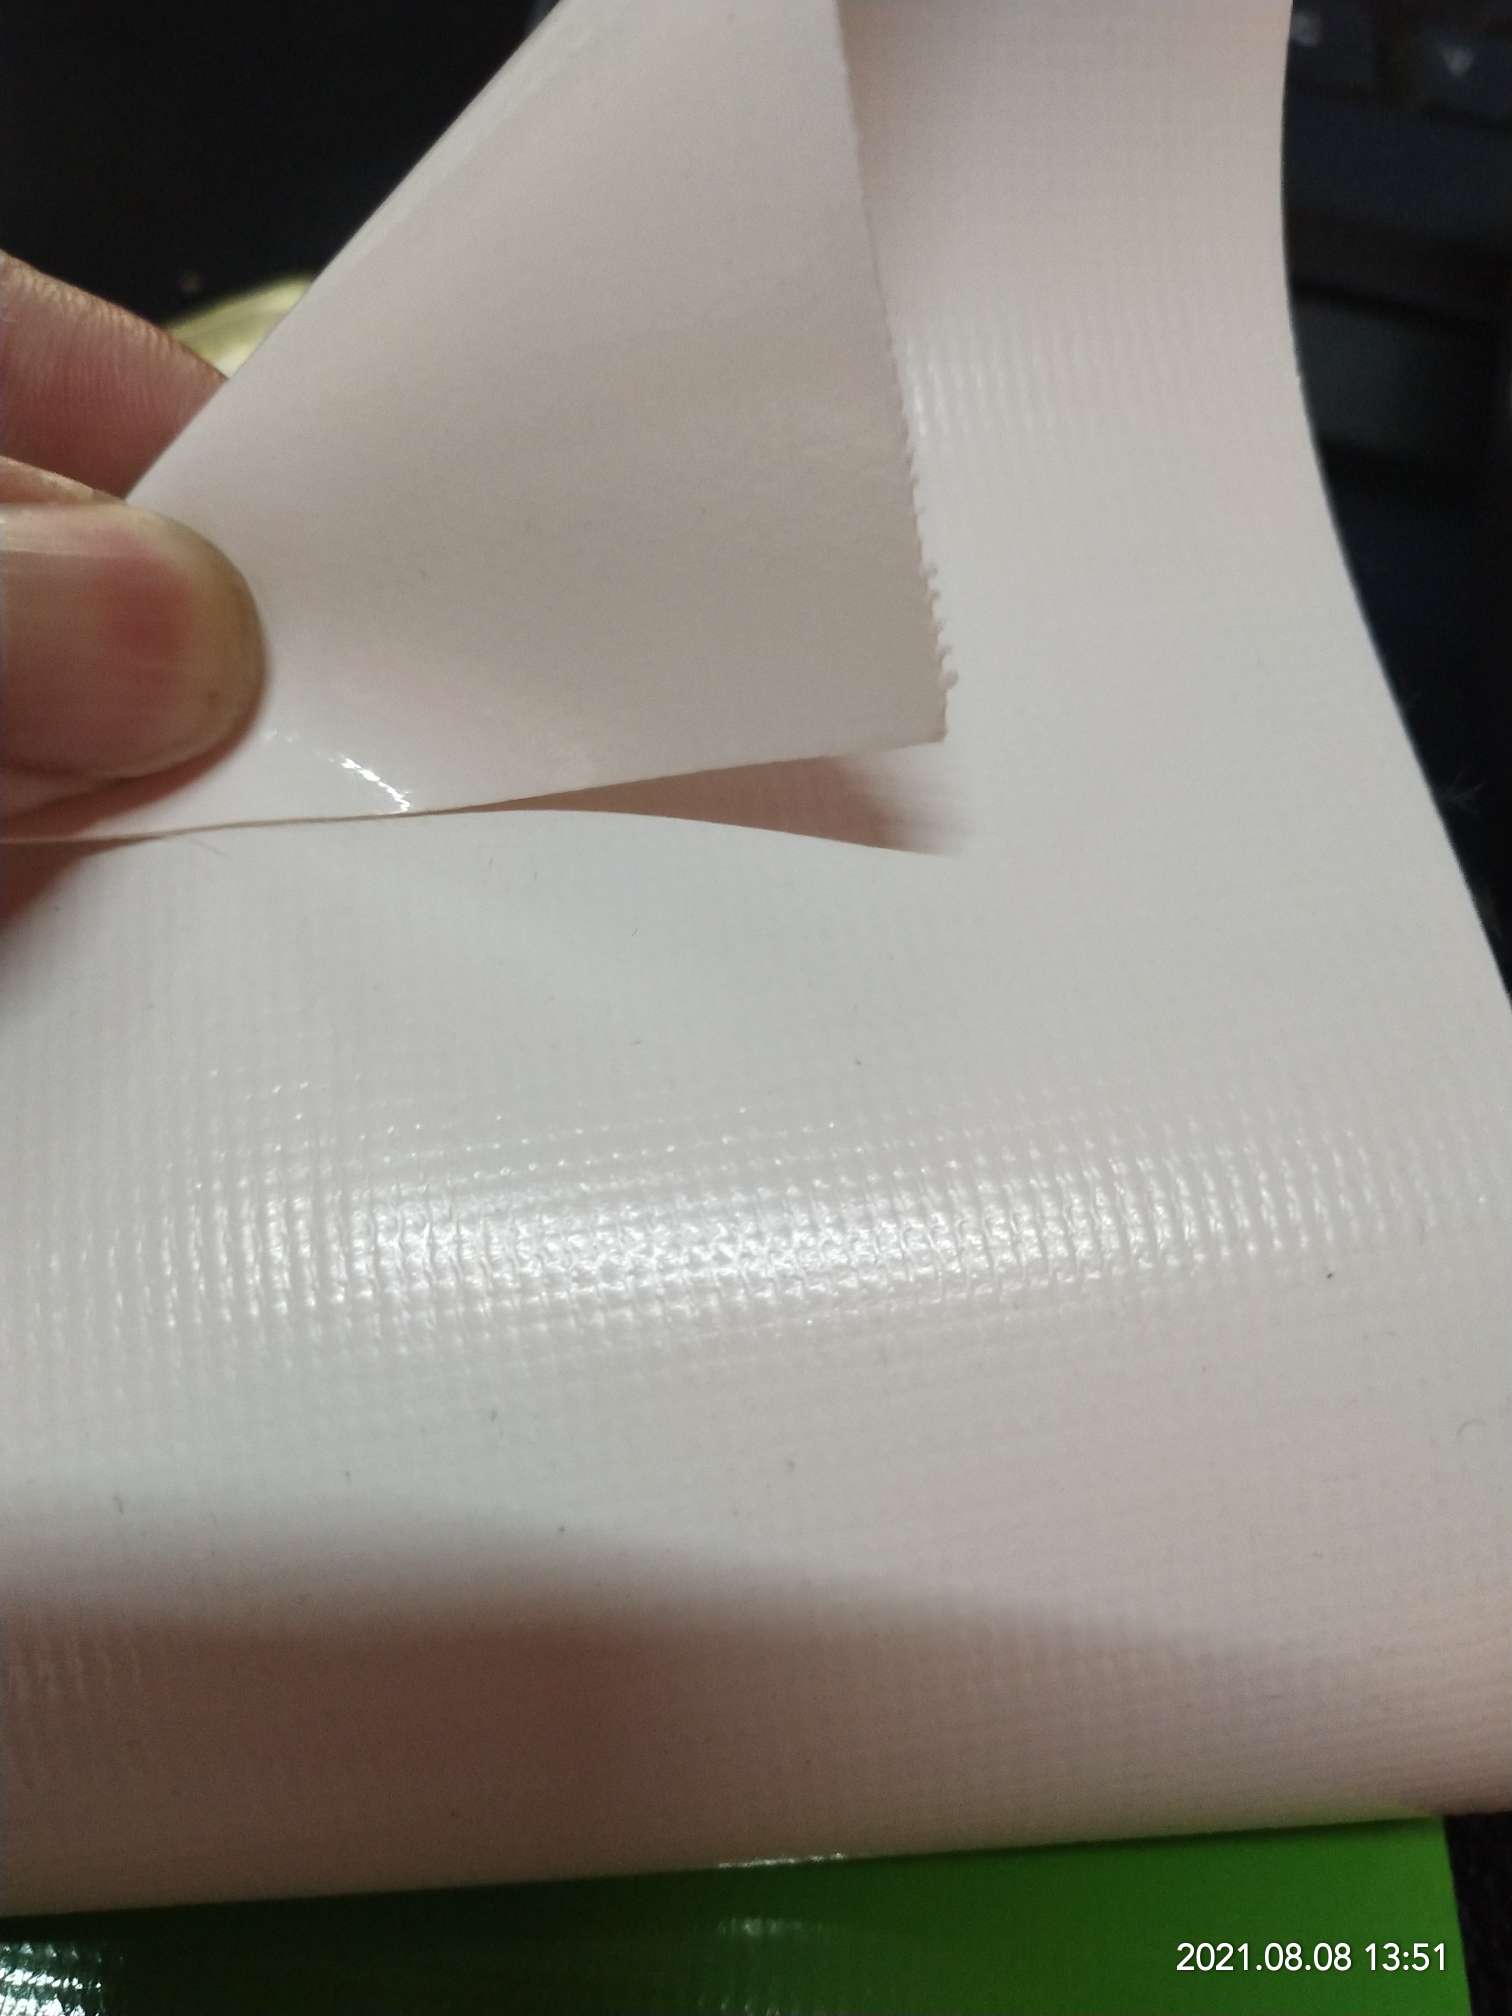 优质光面0.47mm厚奶白色PVC夹网布  箱包布  机器罩家具罩  体育游乐产品  格种箱包袋专用面料详情图2